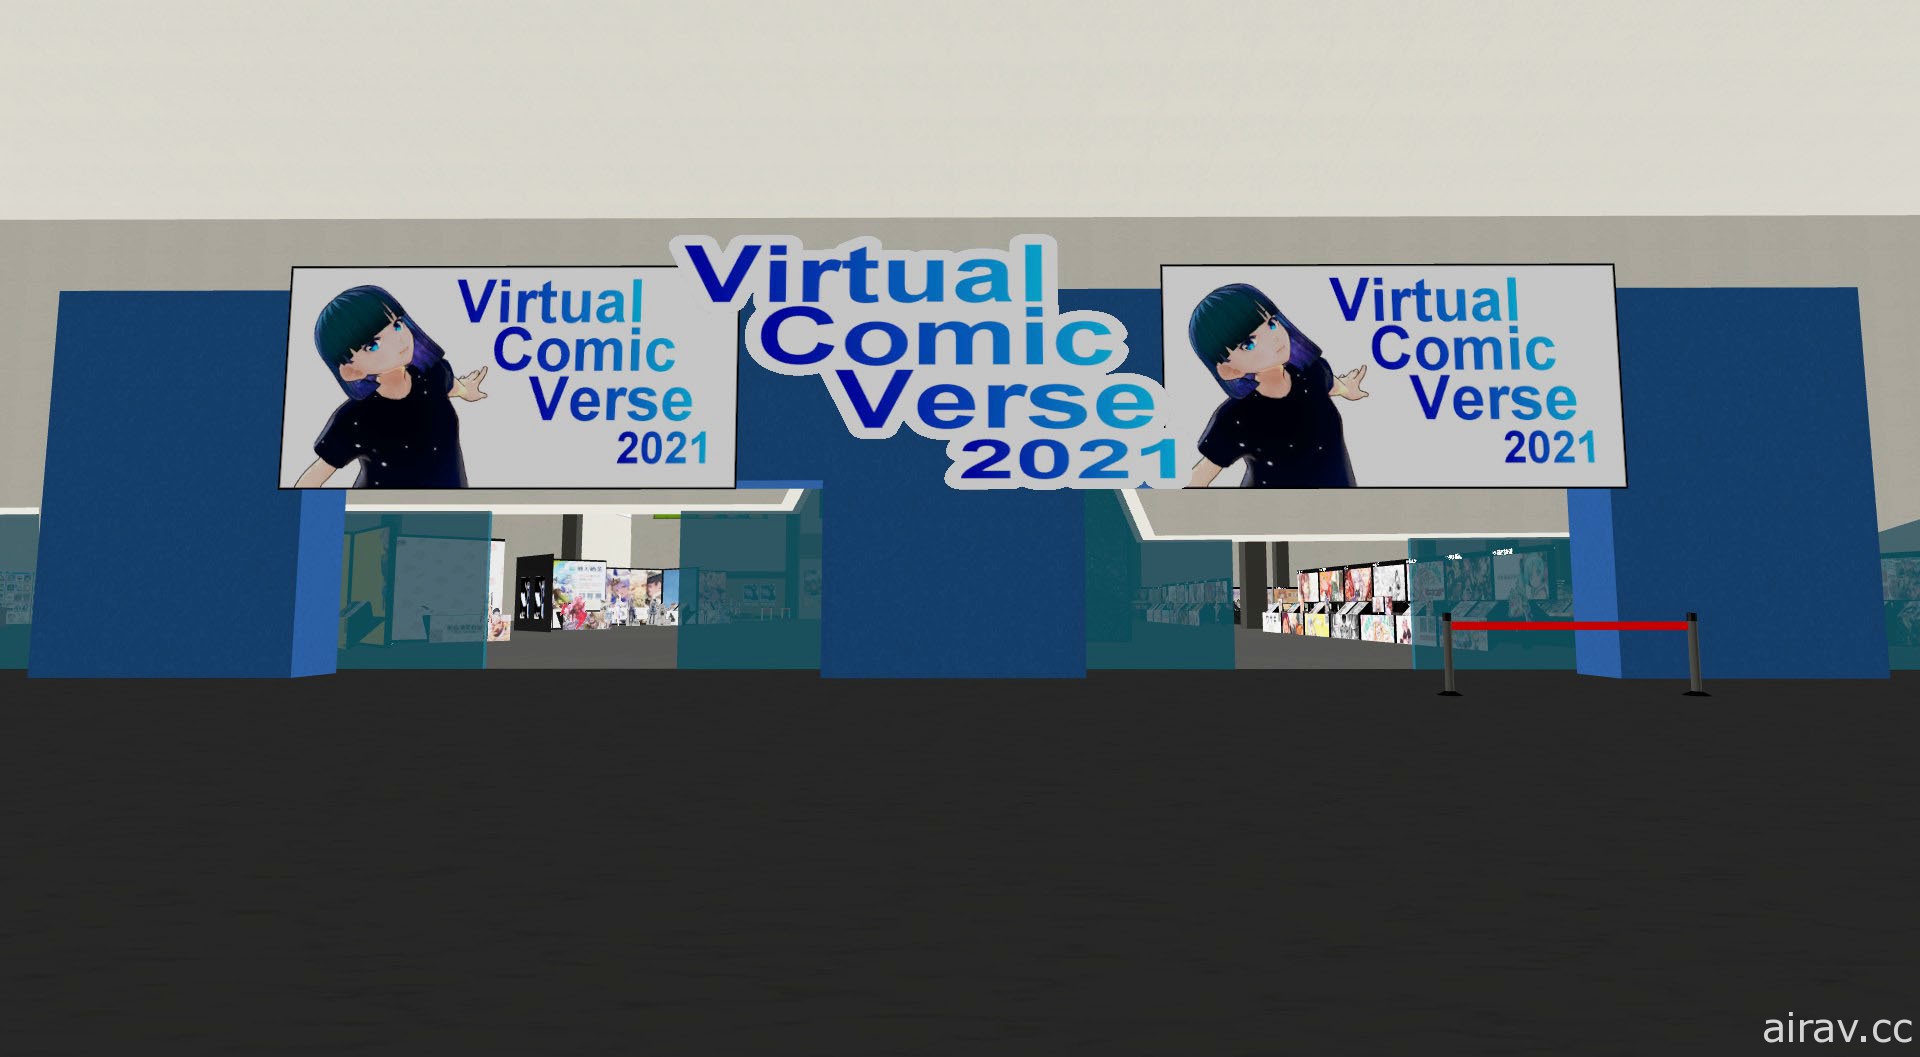 線上虛擬同人展會「VirtualComicVerse」即將展開 官方公布活動詳情